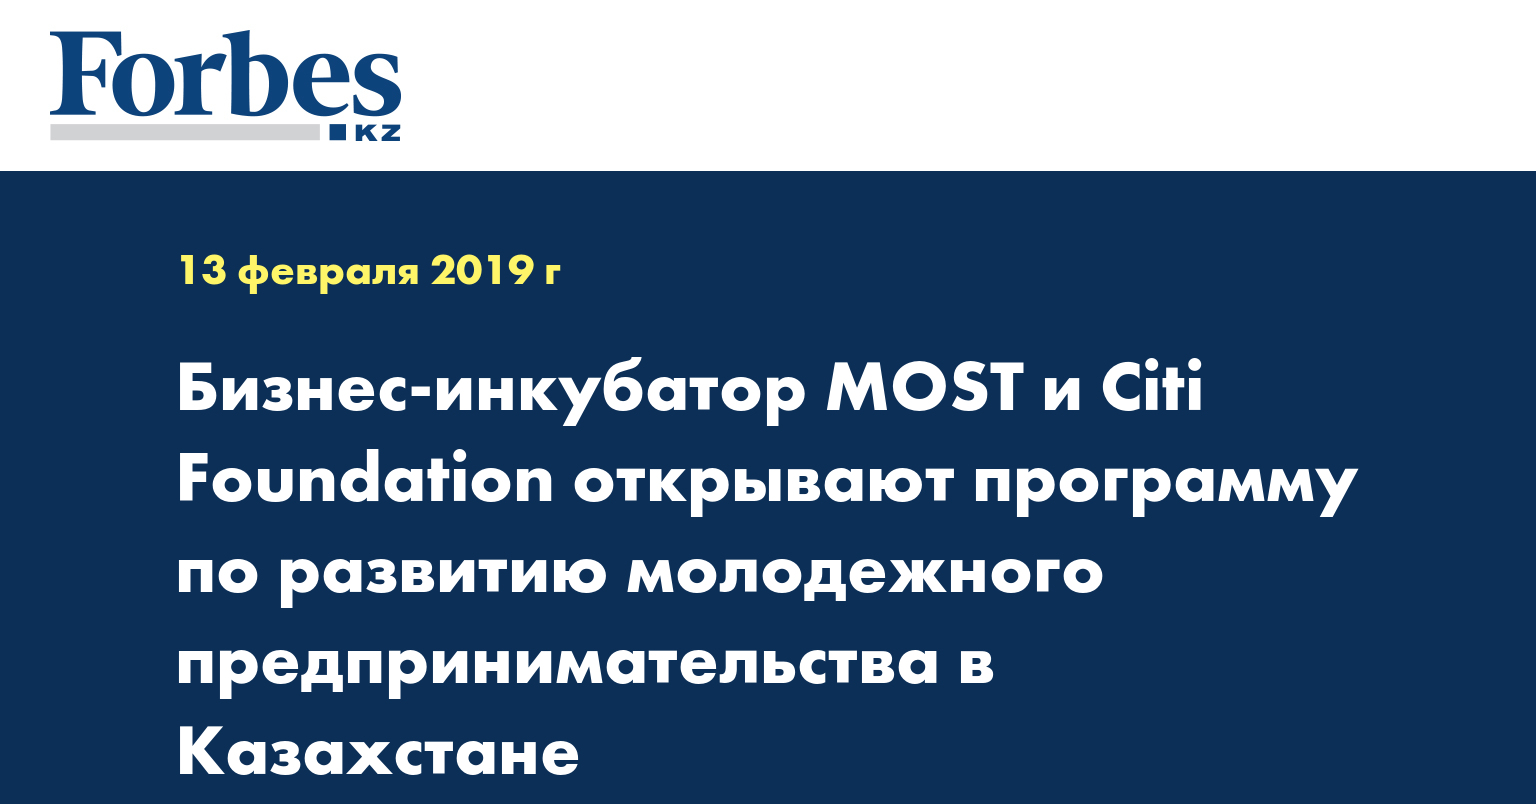 Бизнес-инкубатор MOST и Citi Foundation открывают программу по развитию молодежного предпринимательства в Казахстане